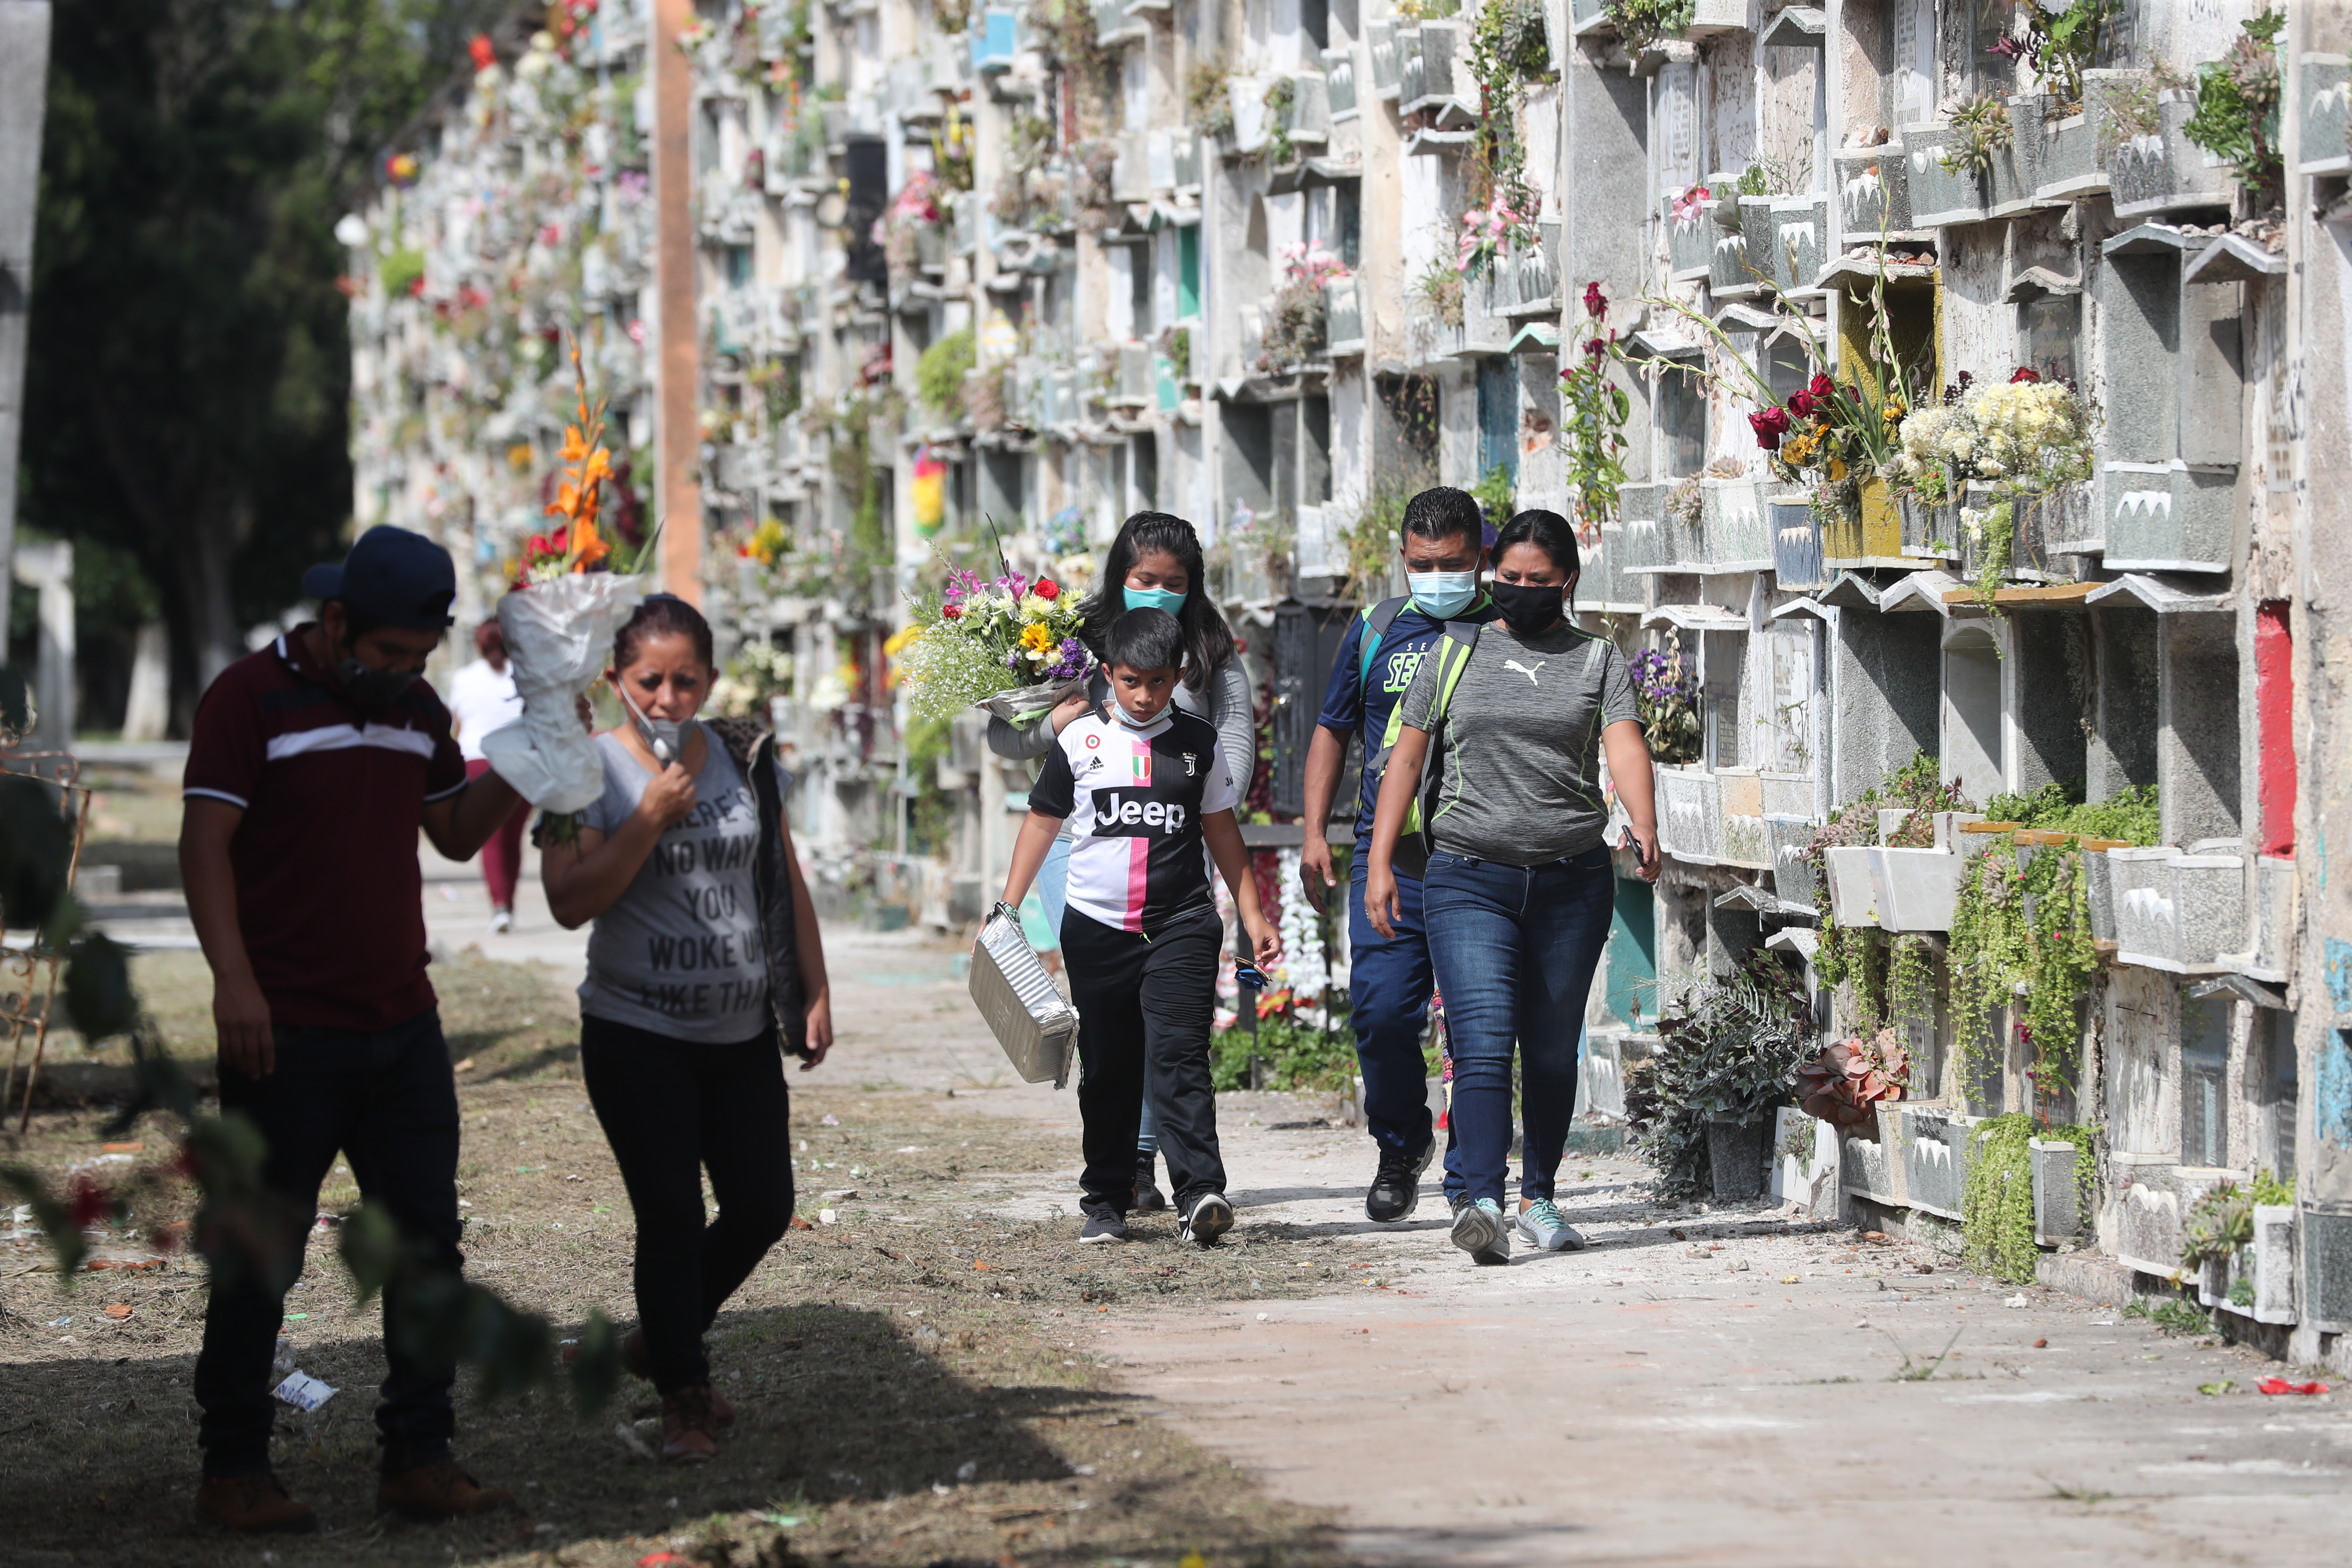 
Quienes visiten los cementerios deberán cumplir con las normas de seguridad establecidas por las autoridades. (Foto Prensa Libre: Érick Ávila)